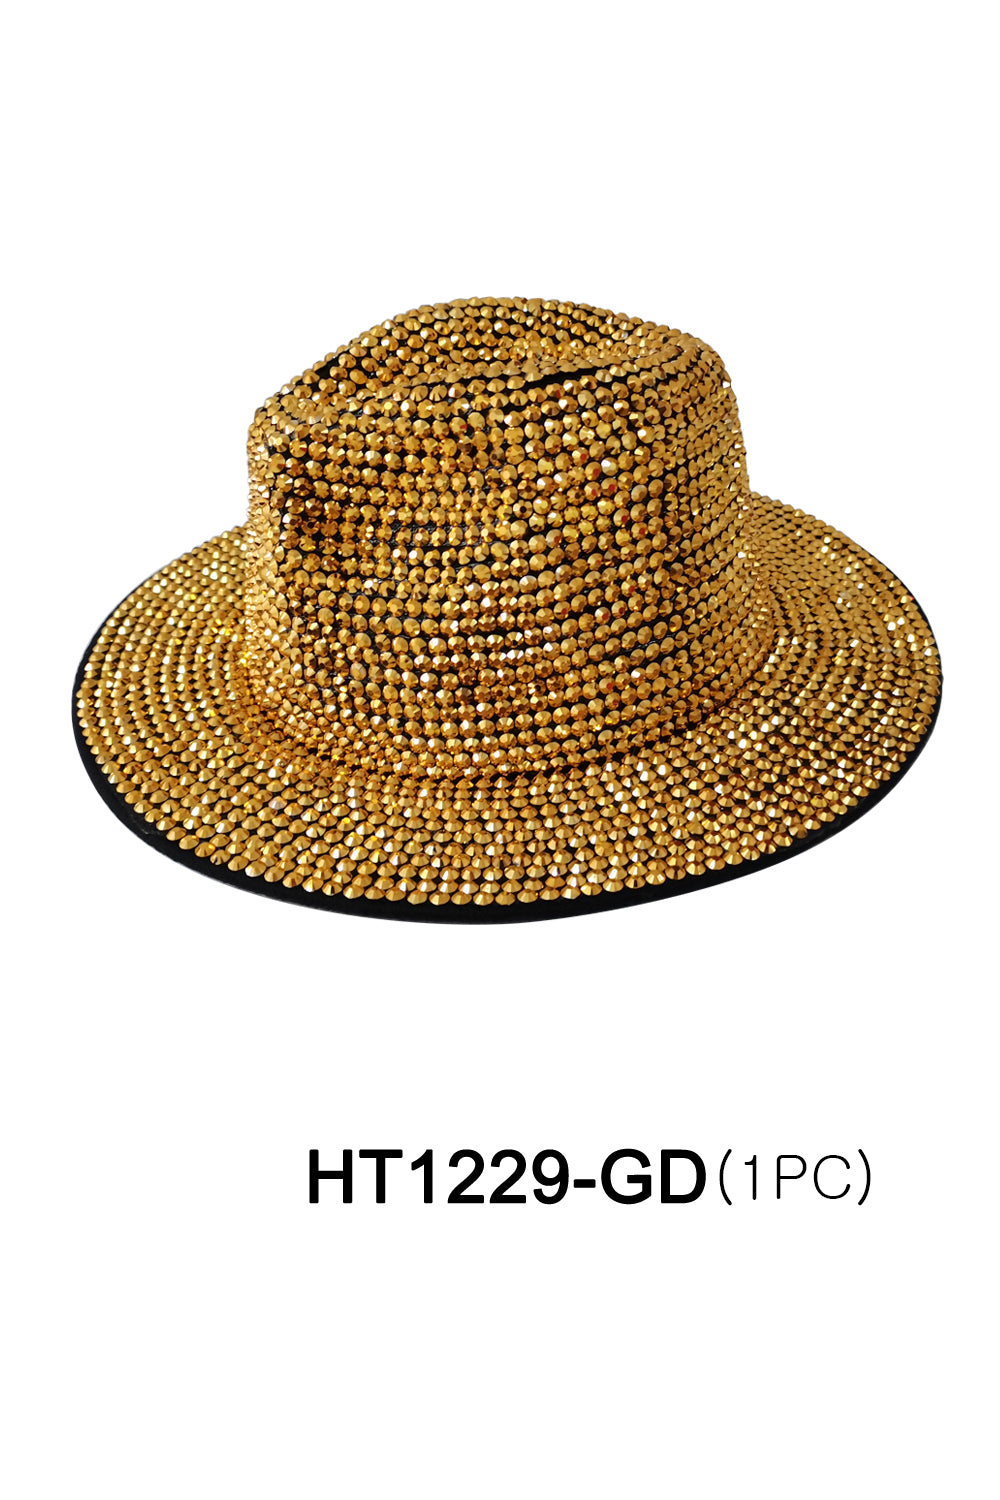 HT1229-GD (6PC)